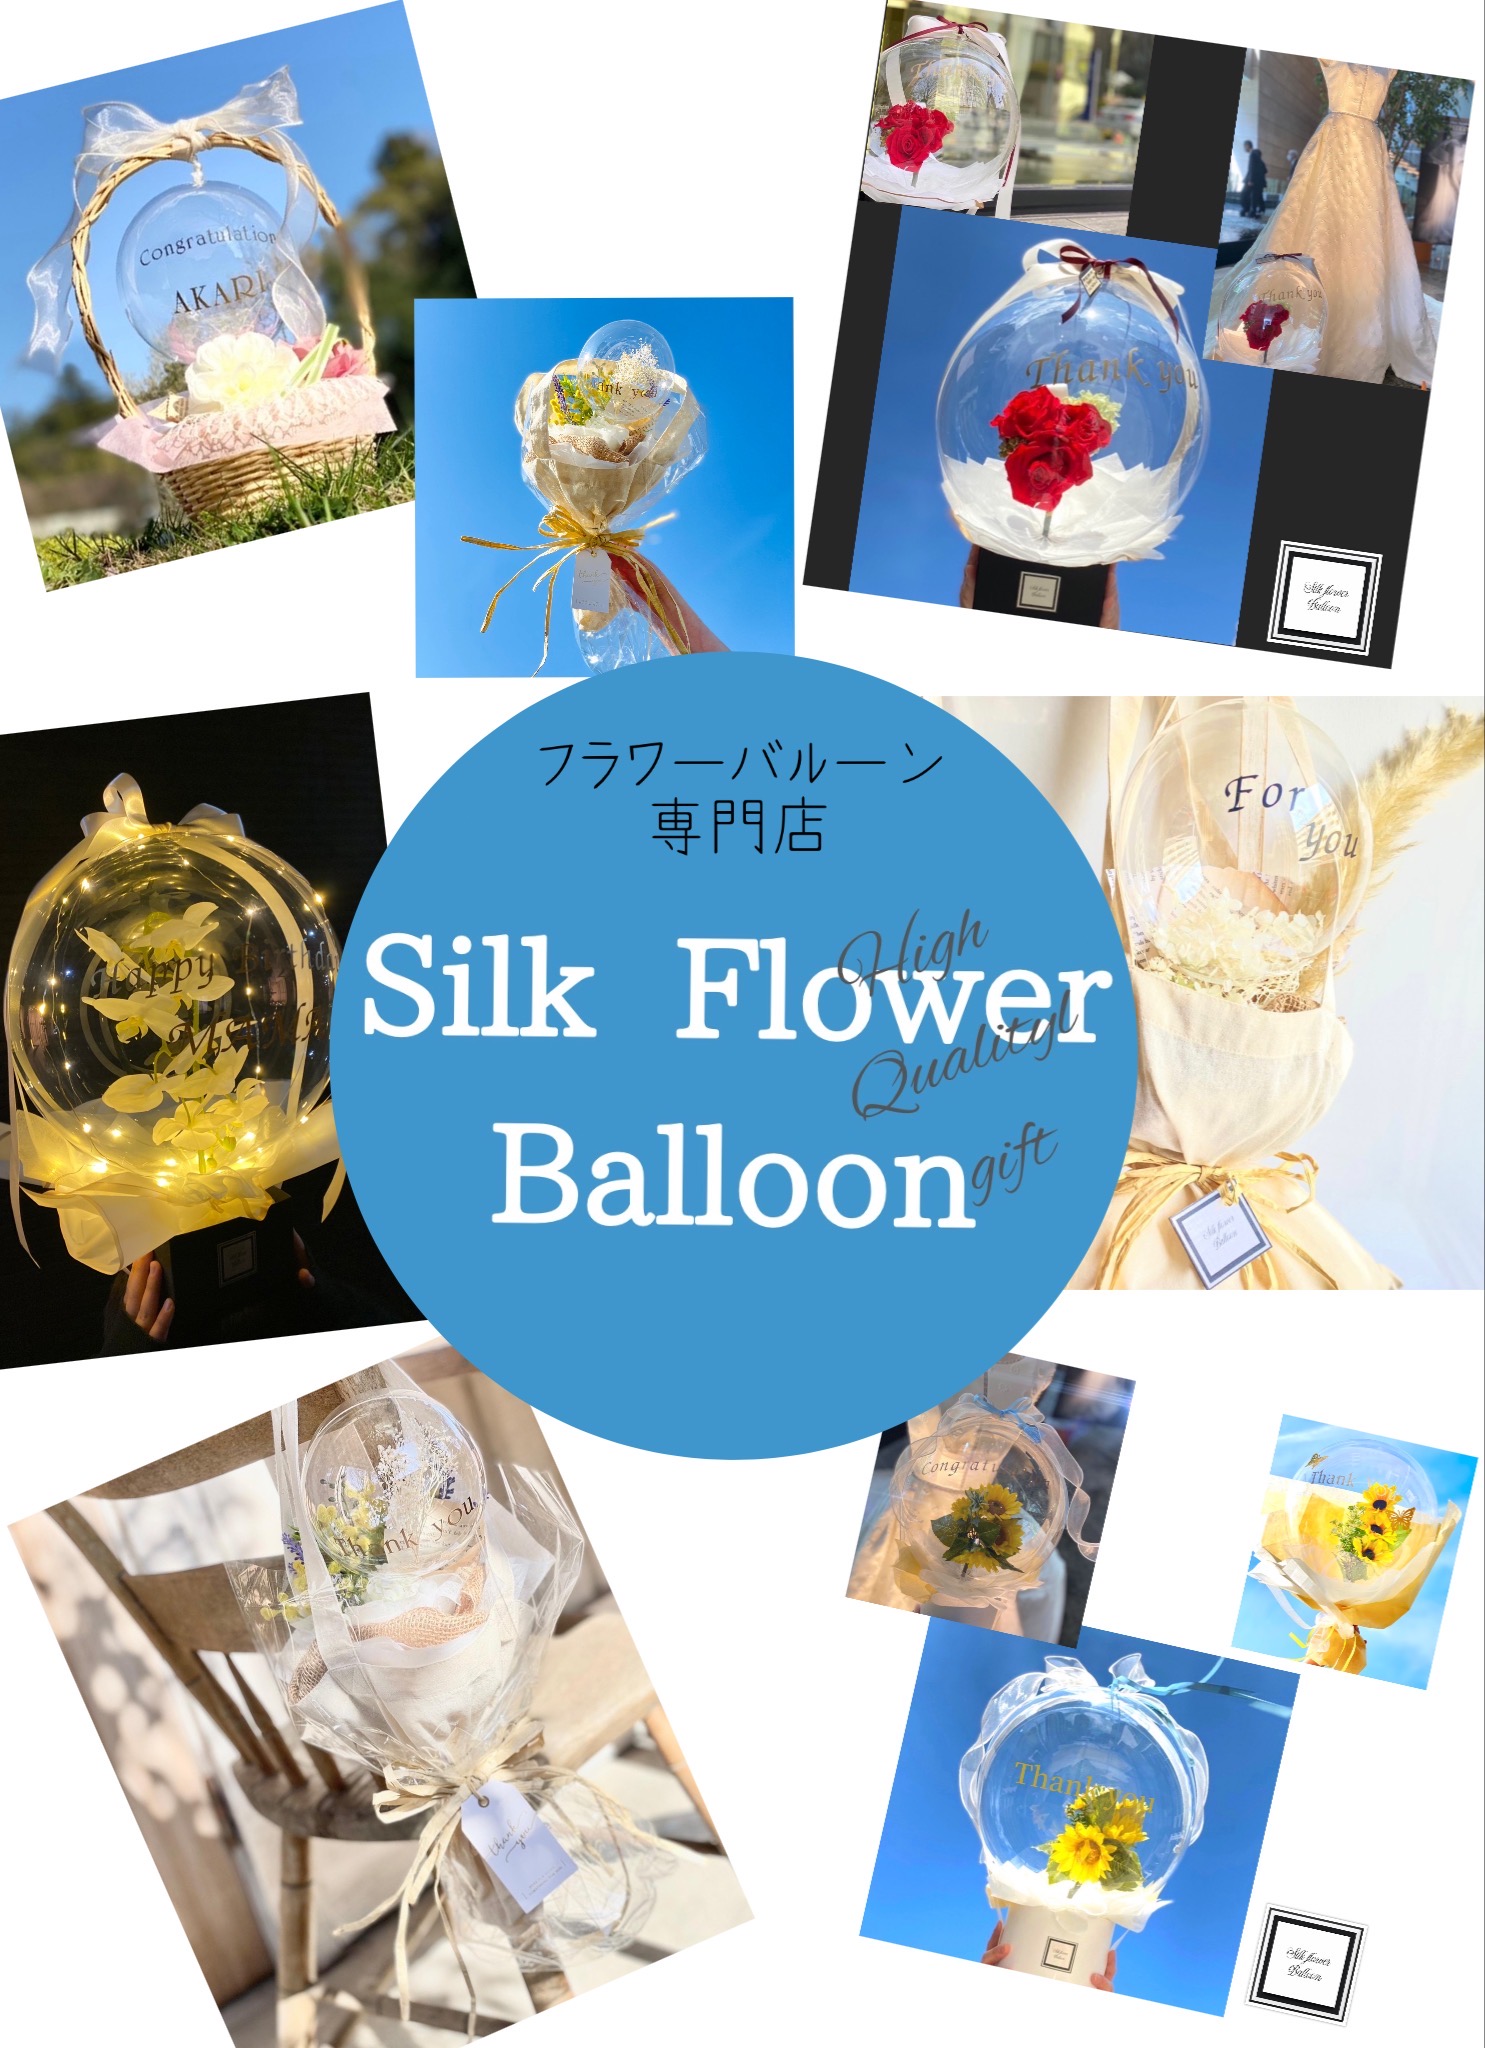 想いも贈る癒しのフラワーバルーンギフト Silk Flower Balloon では 初のイベント